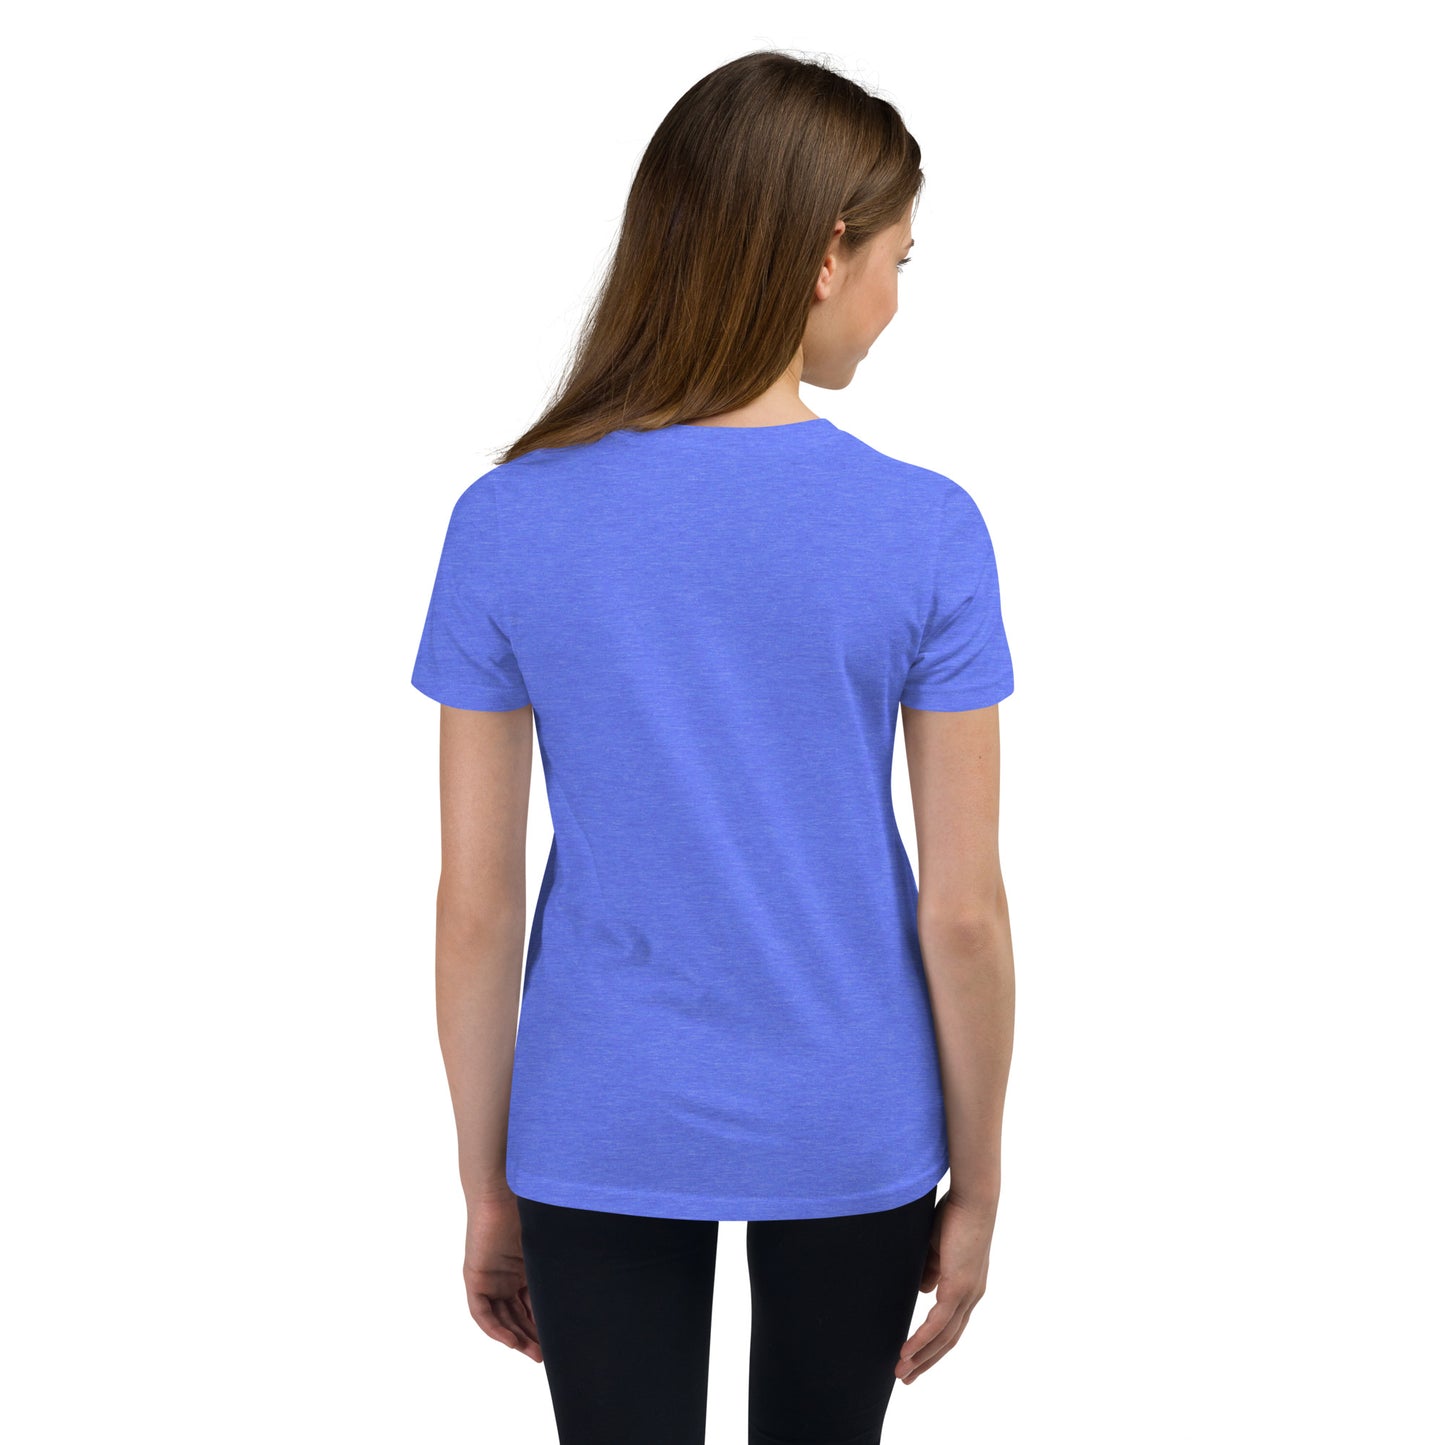 Kids - Miss Blue Sky - Short Sleeve T-Shirt